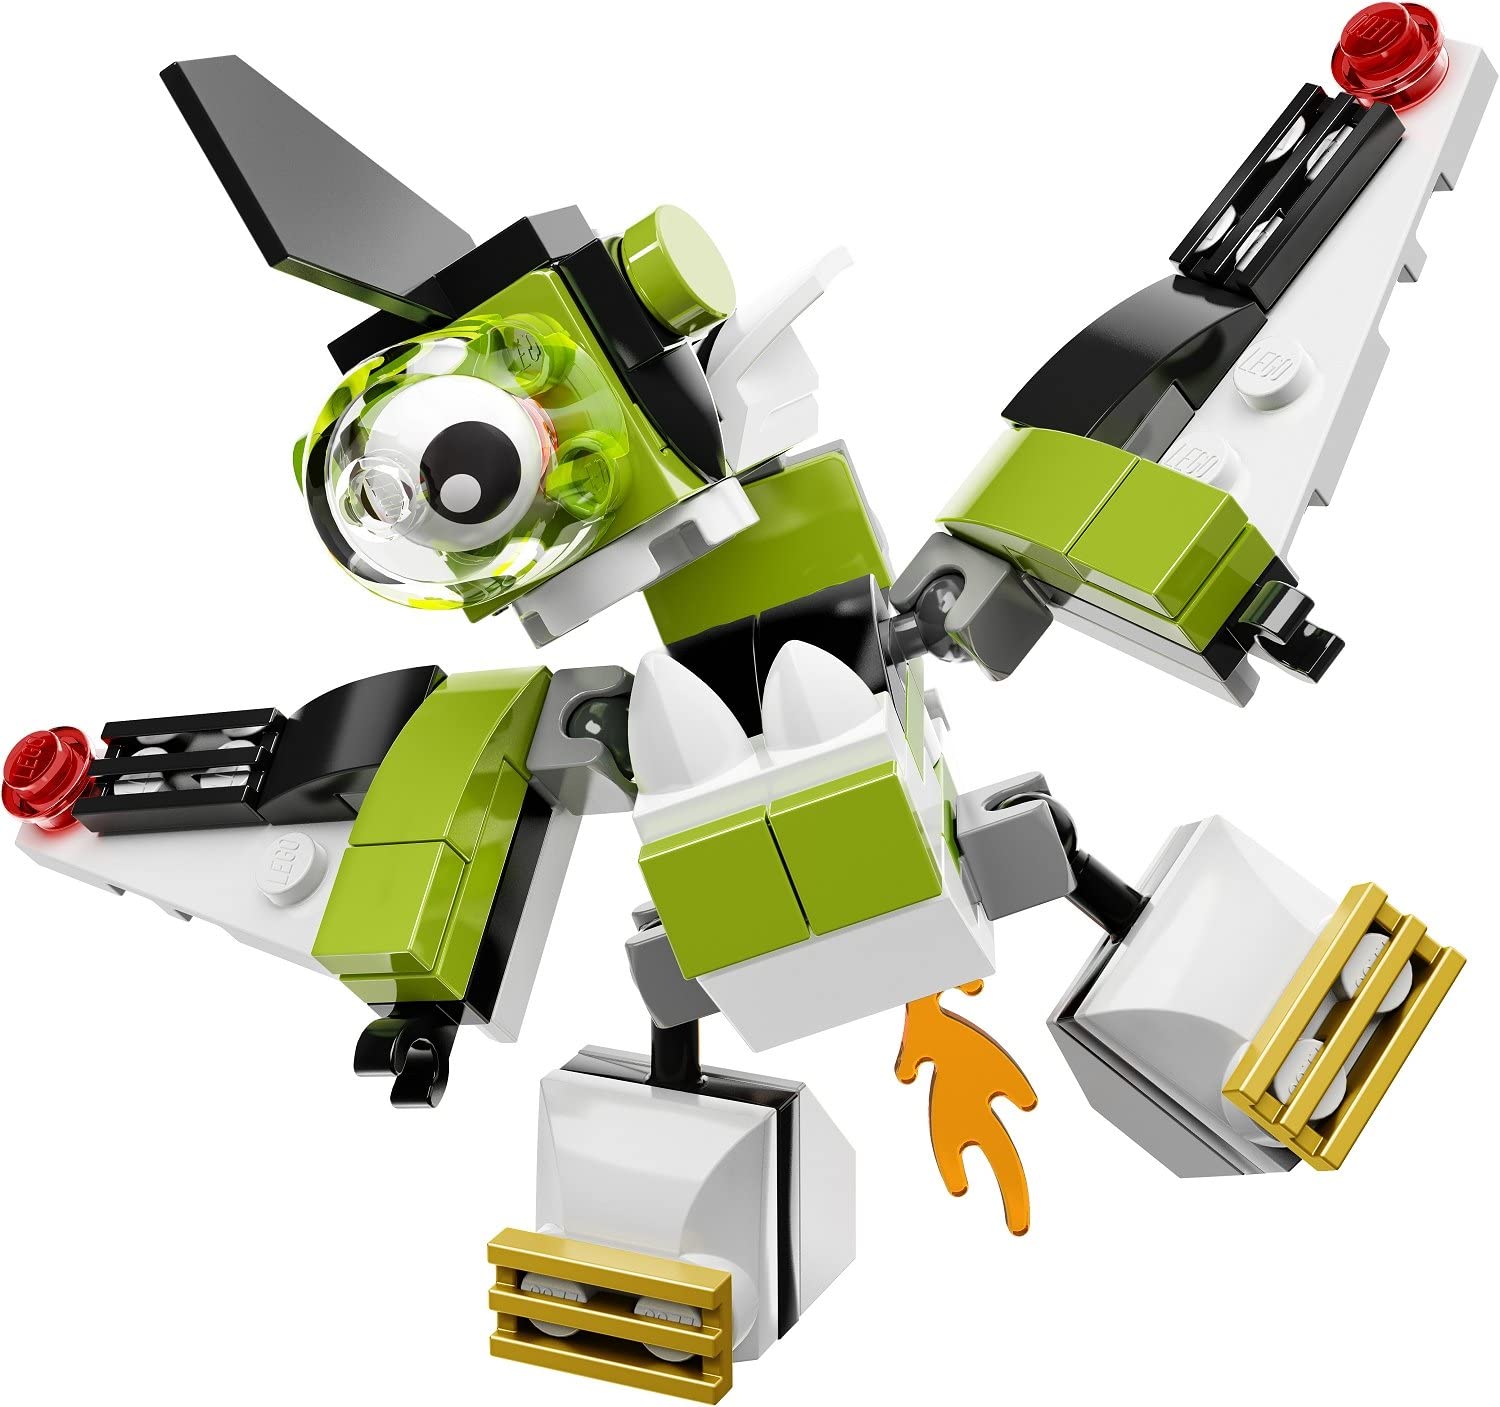 LEGO Mixels 41528 Niksput Building Kit